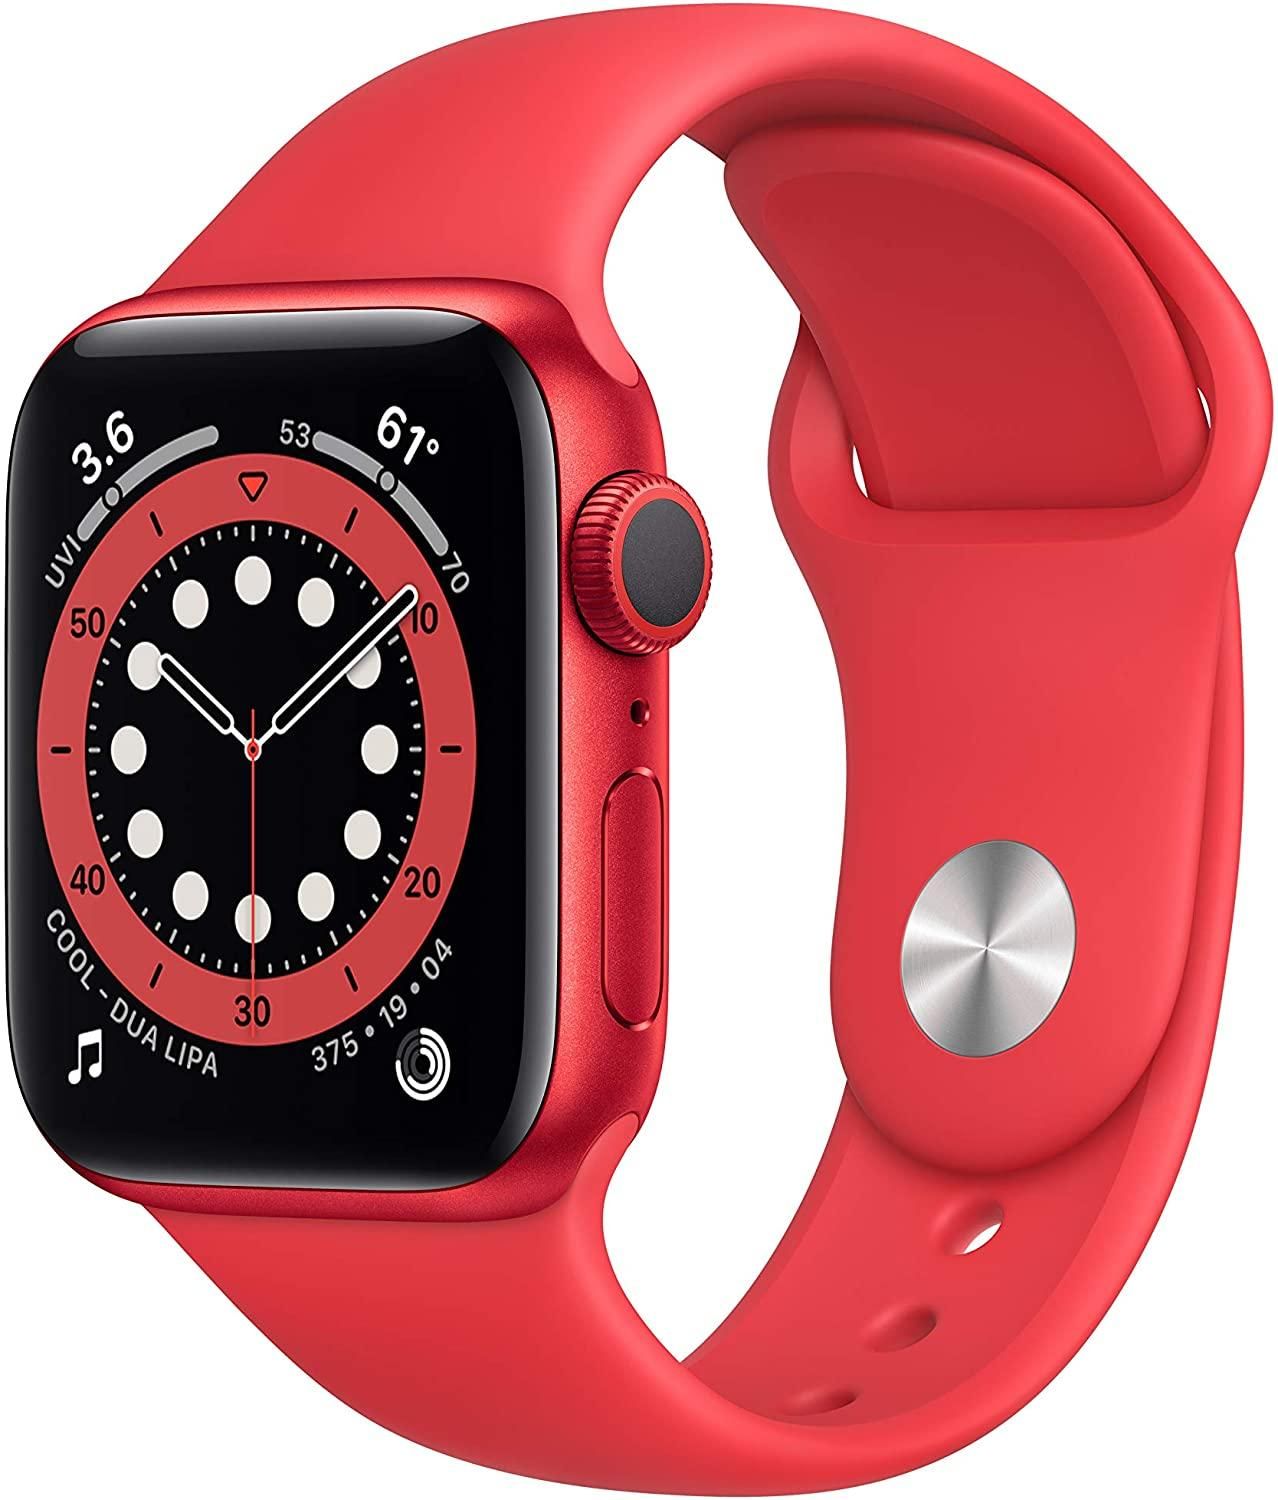 Yeni Apple Watch Series 6 (ÜRÜN)KIRMIZI